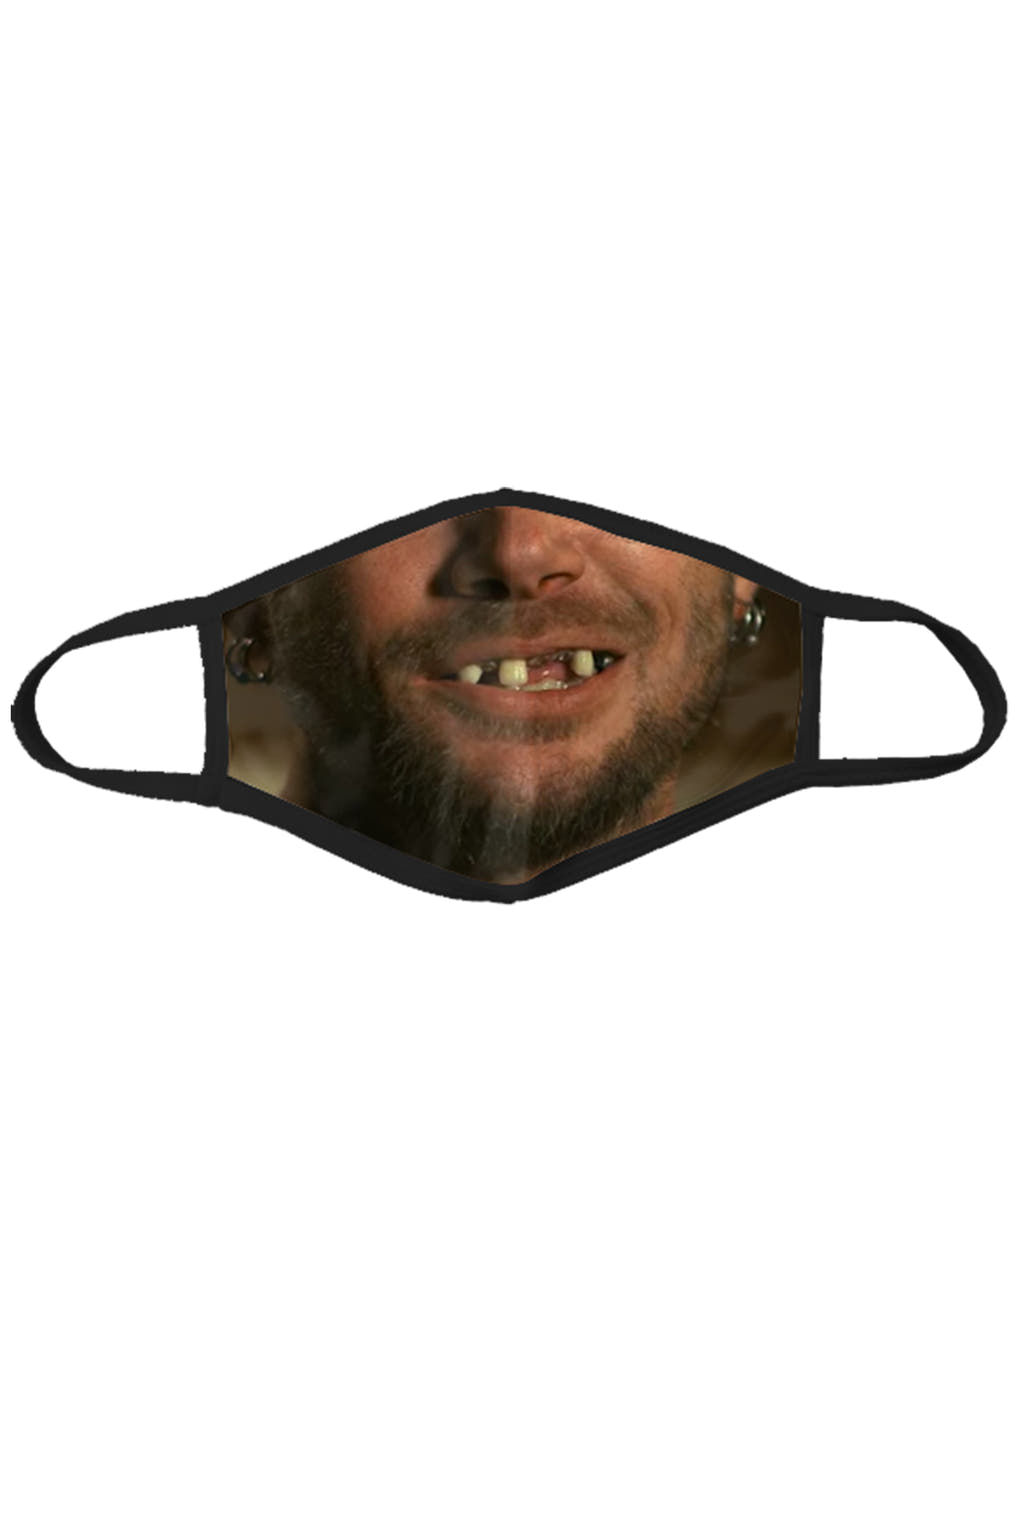 The Mr. Lovable | Hillbilly Teeth Face Mask